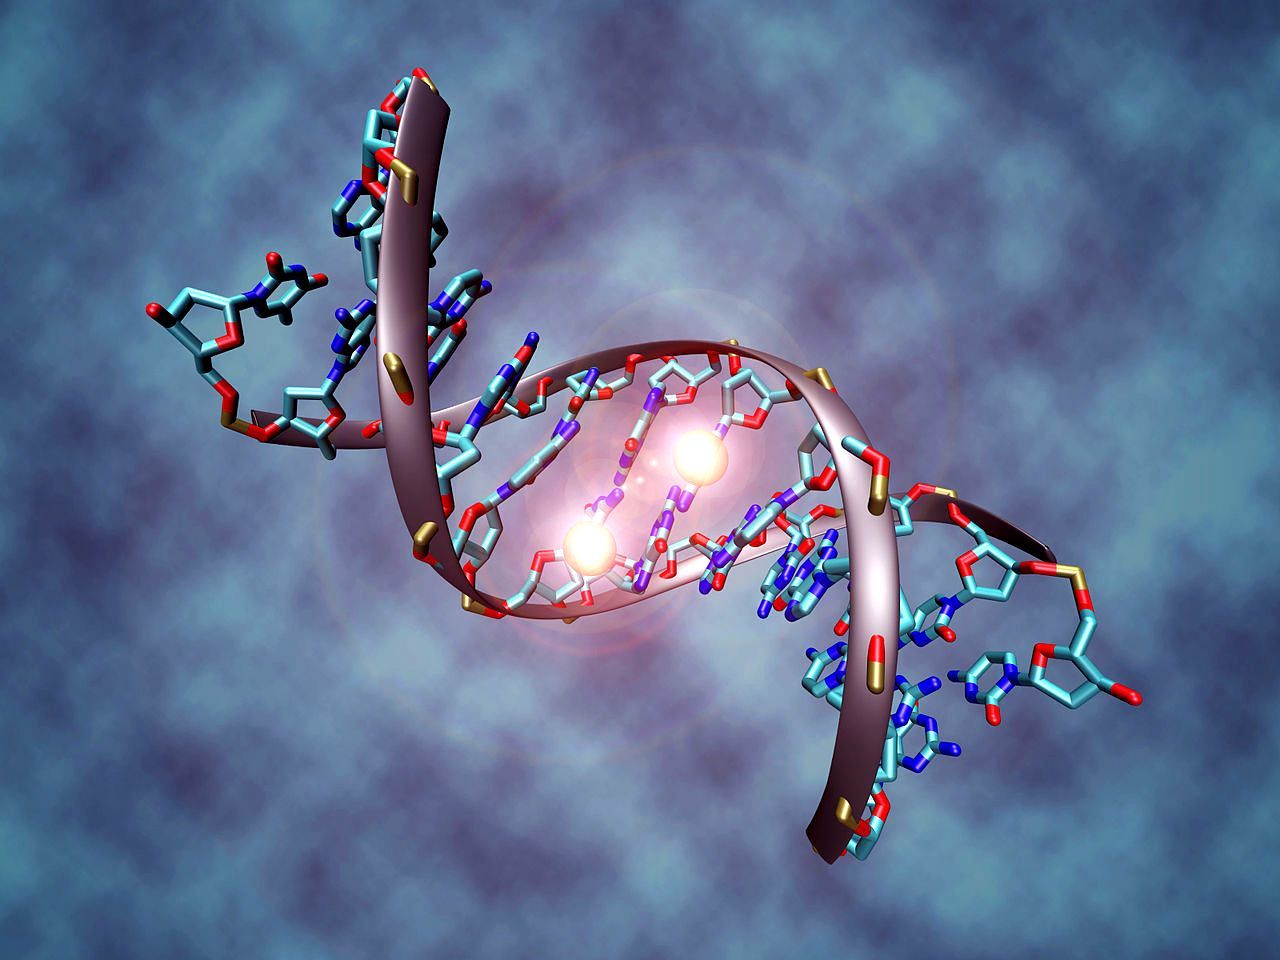 26 dīvainākie fakti par DNS un gēniem, par kuriem jūs nekad neesat dzirdējuši 4